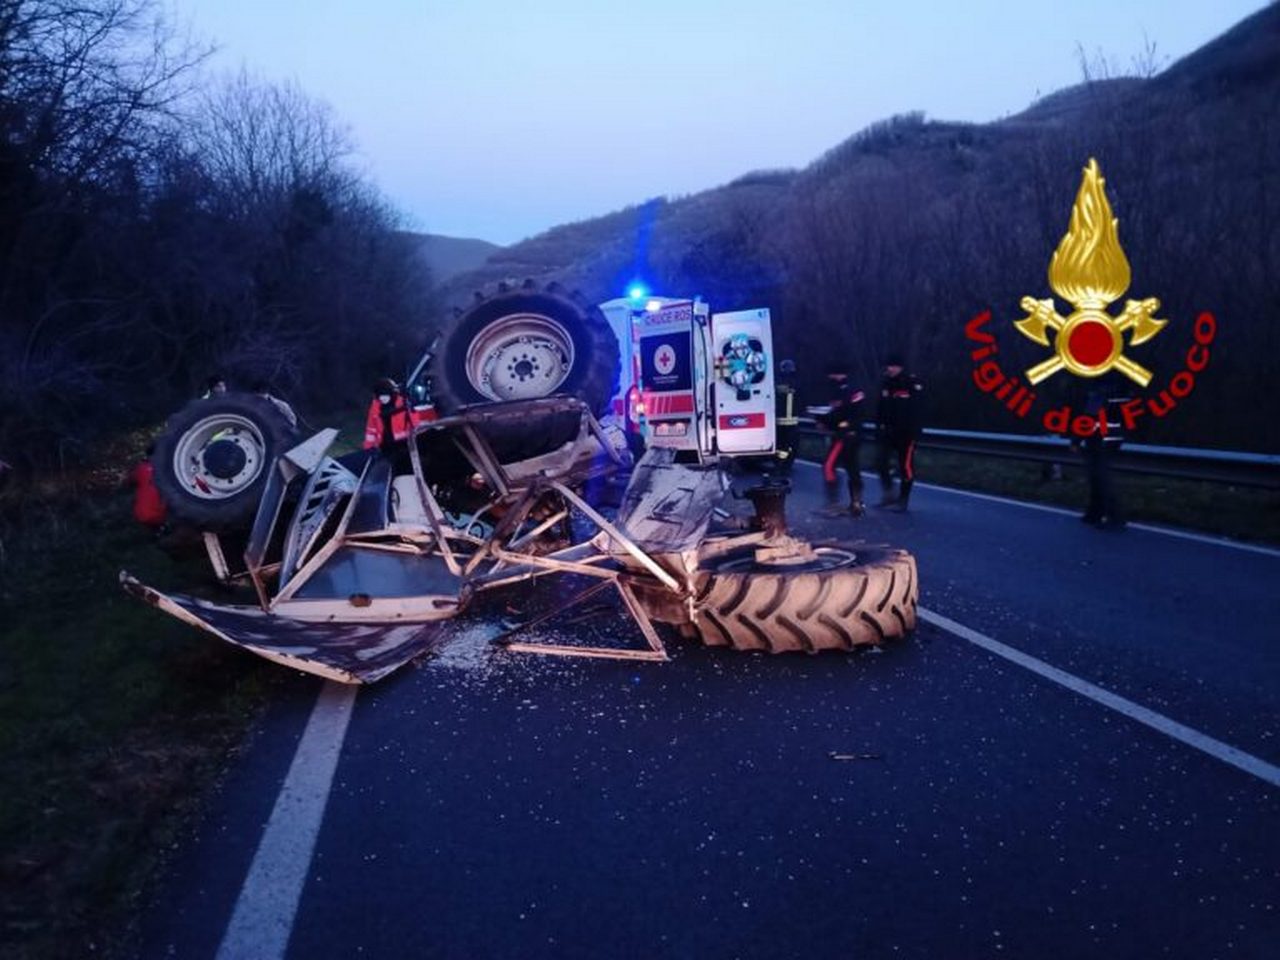 incidente-monteforte-irpino-trattore-oggi-2-febbraio-ferito